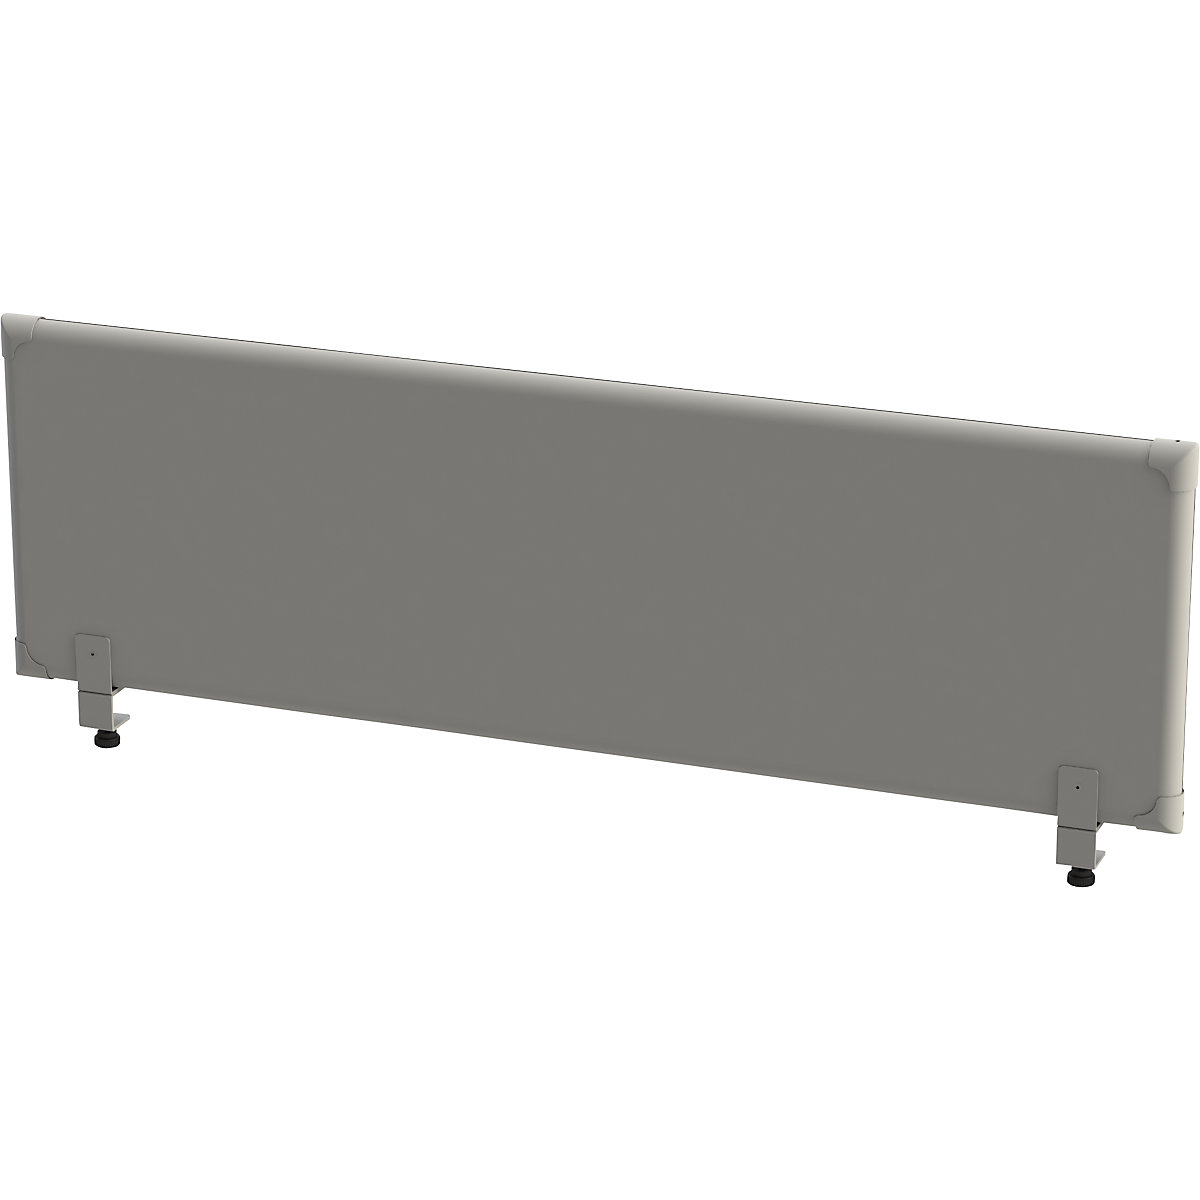 EUROKRAFTpro Akustik-Tischaufsatz-Paneel, Höhe 450 mm, Breite 1600 mm, grau